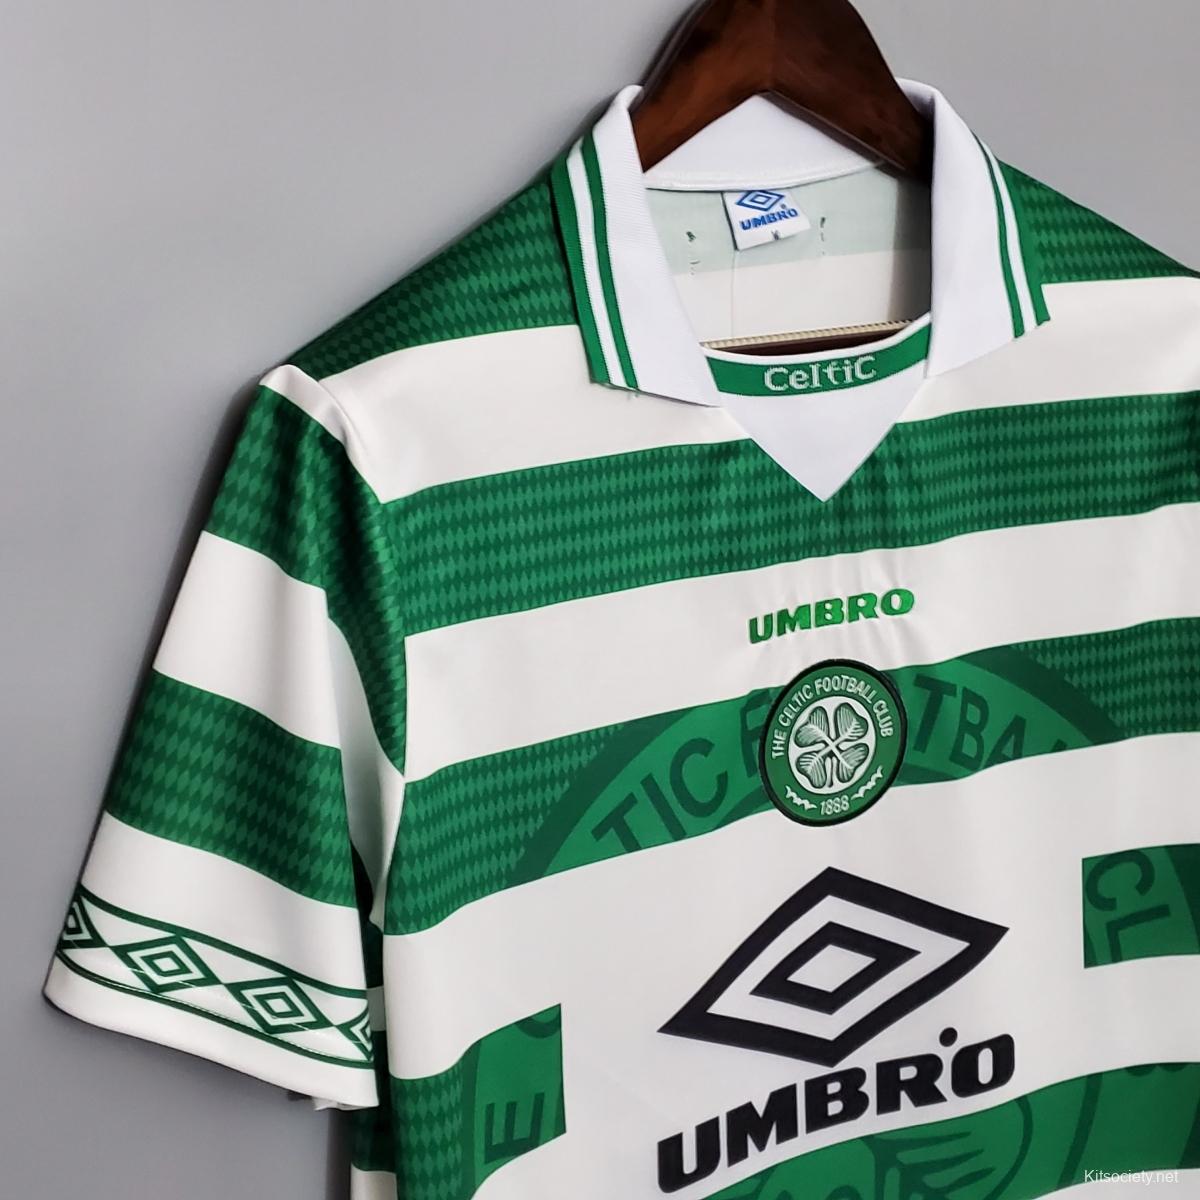 Retro 98/99 Celtic Home Champion Jersey - Kitsociety